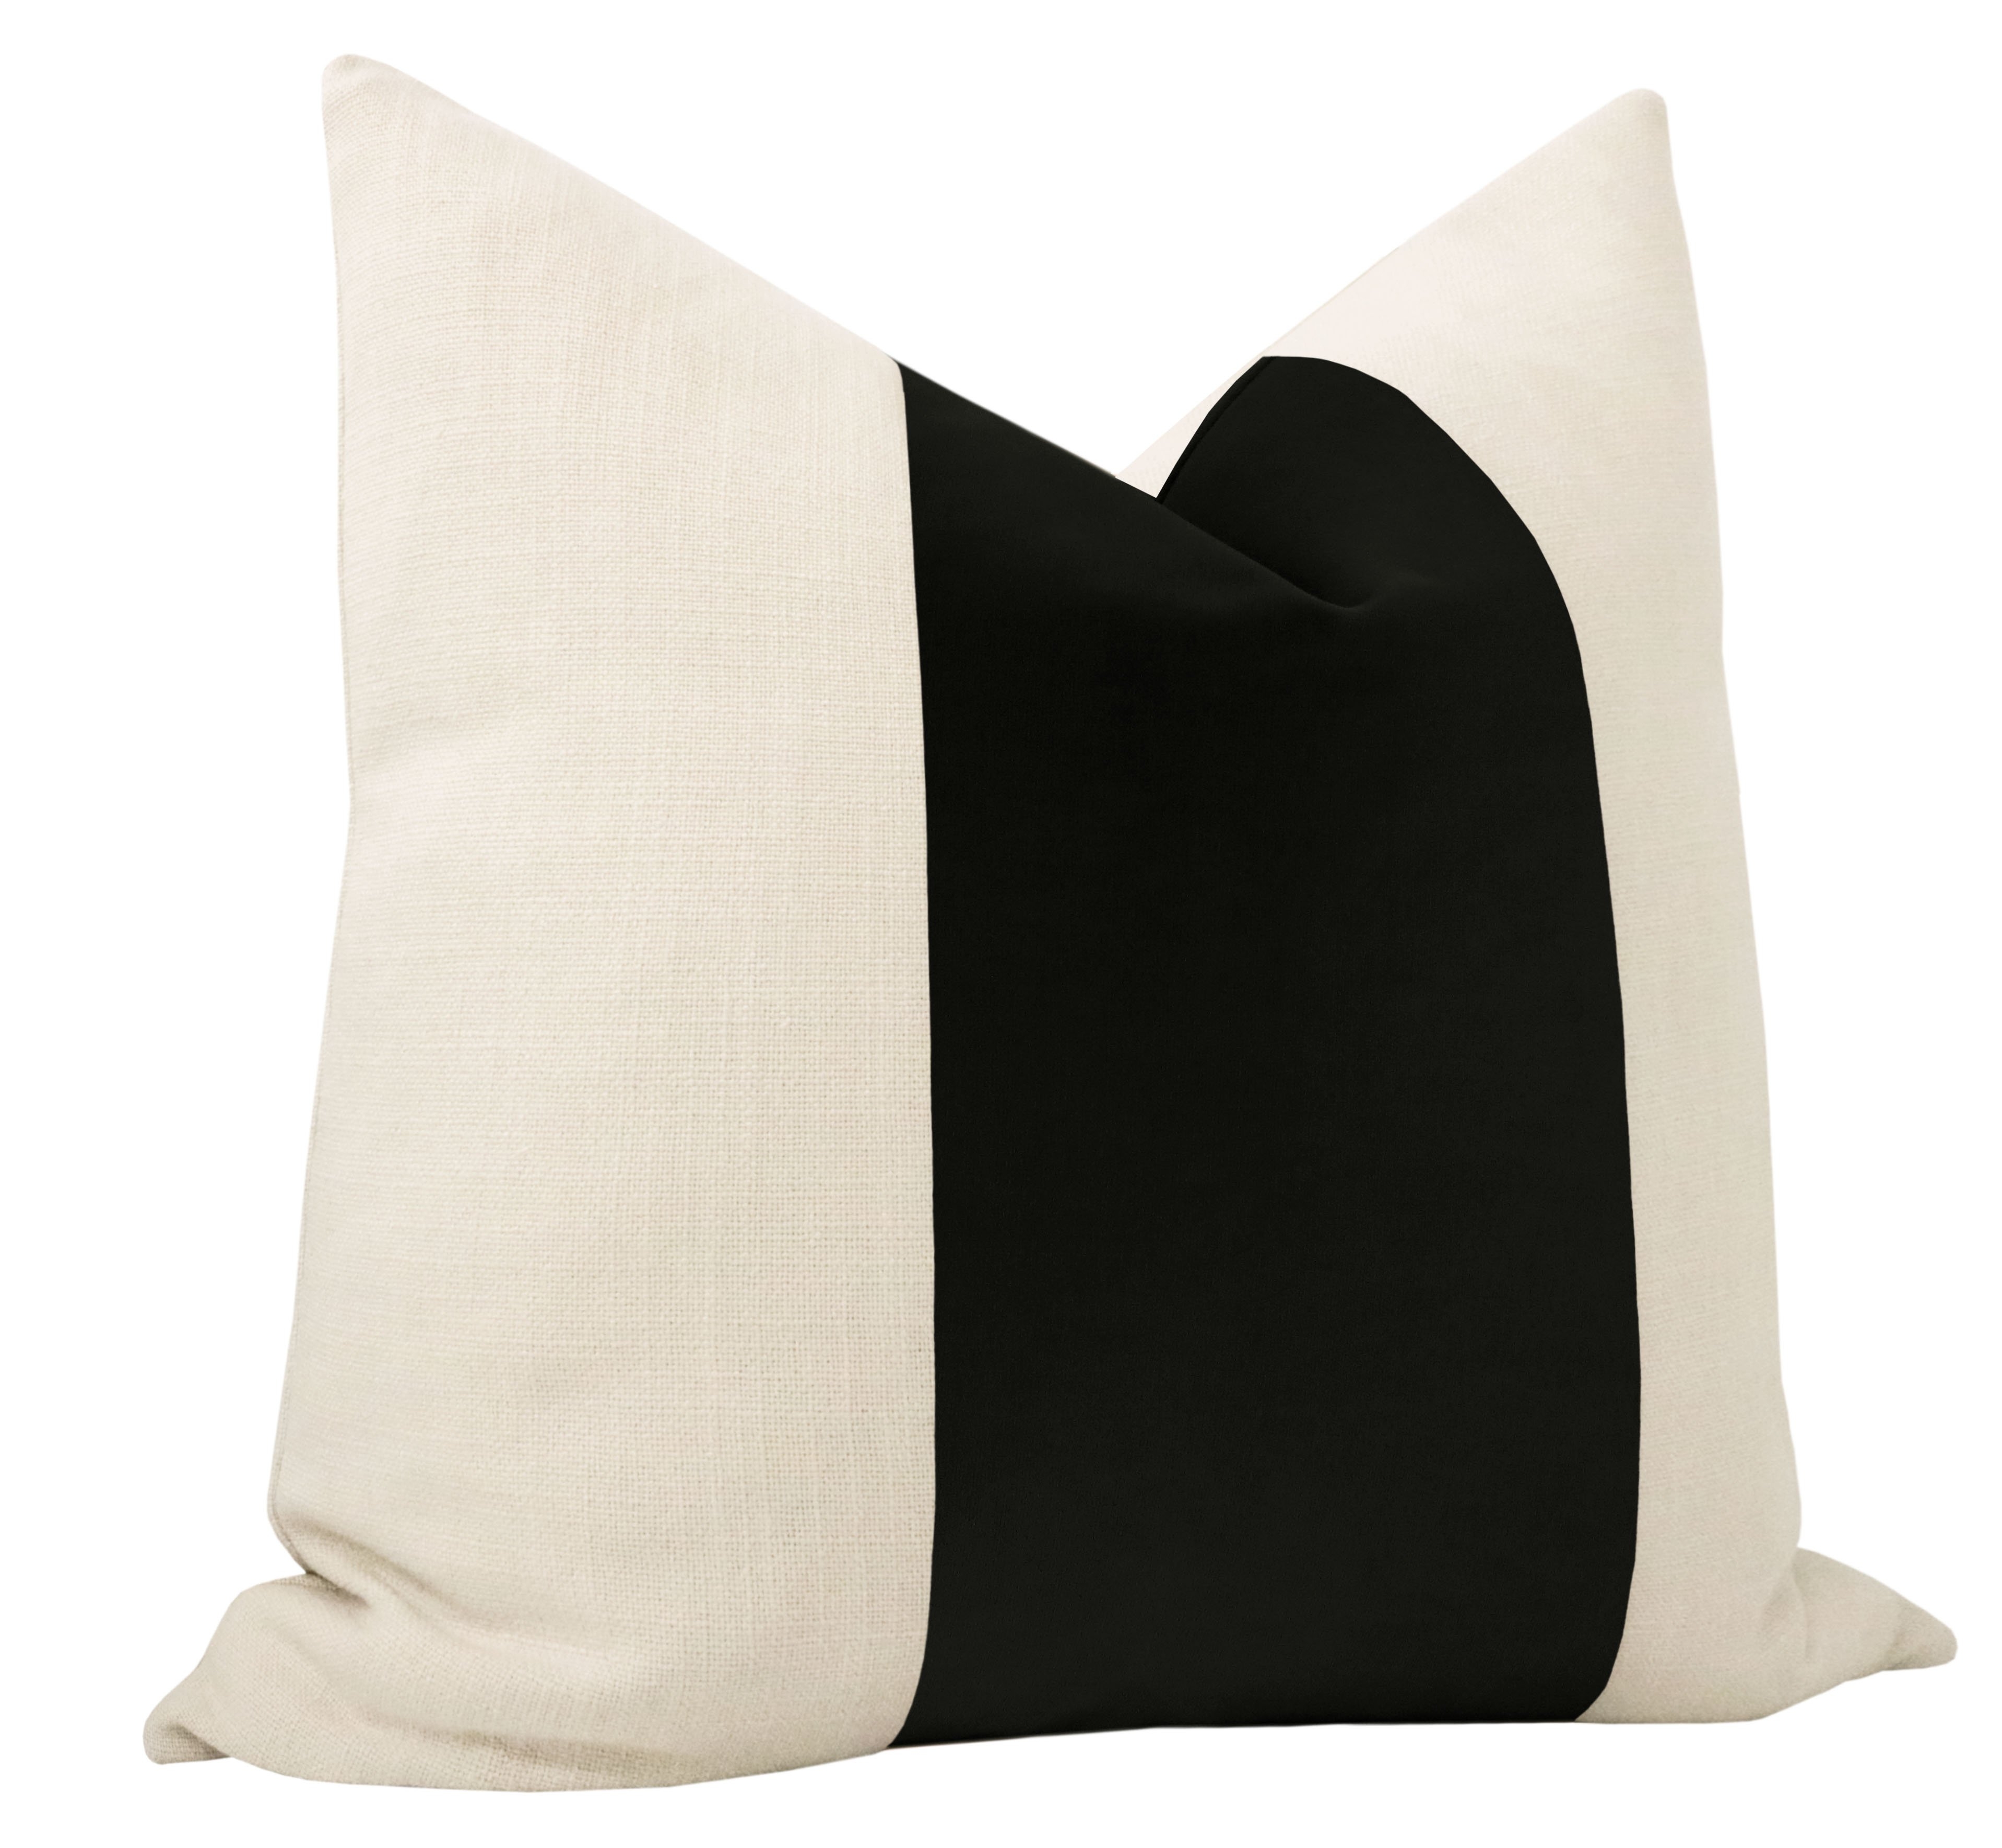 Studio Velvet Pillow Cover, Noir, 18" x 18" - Image 3